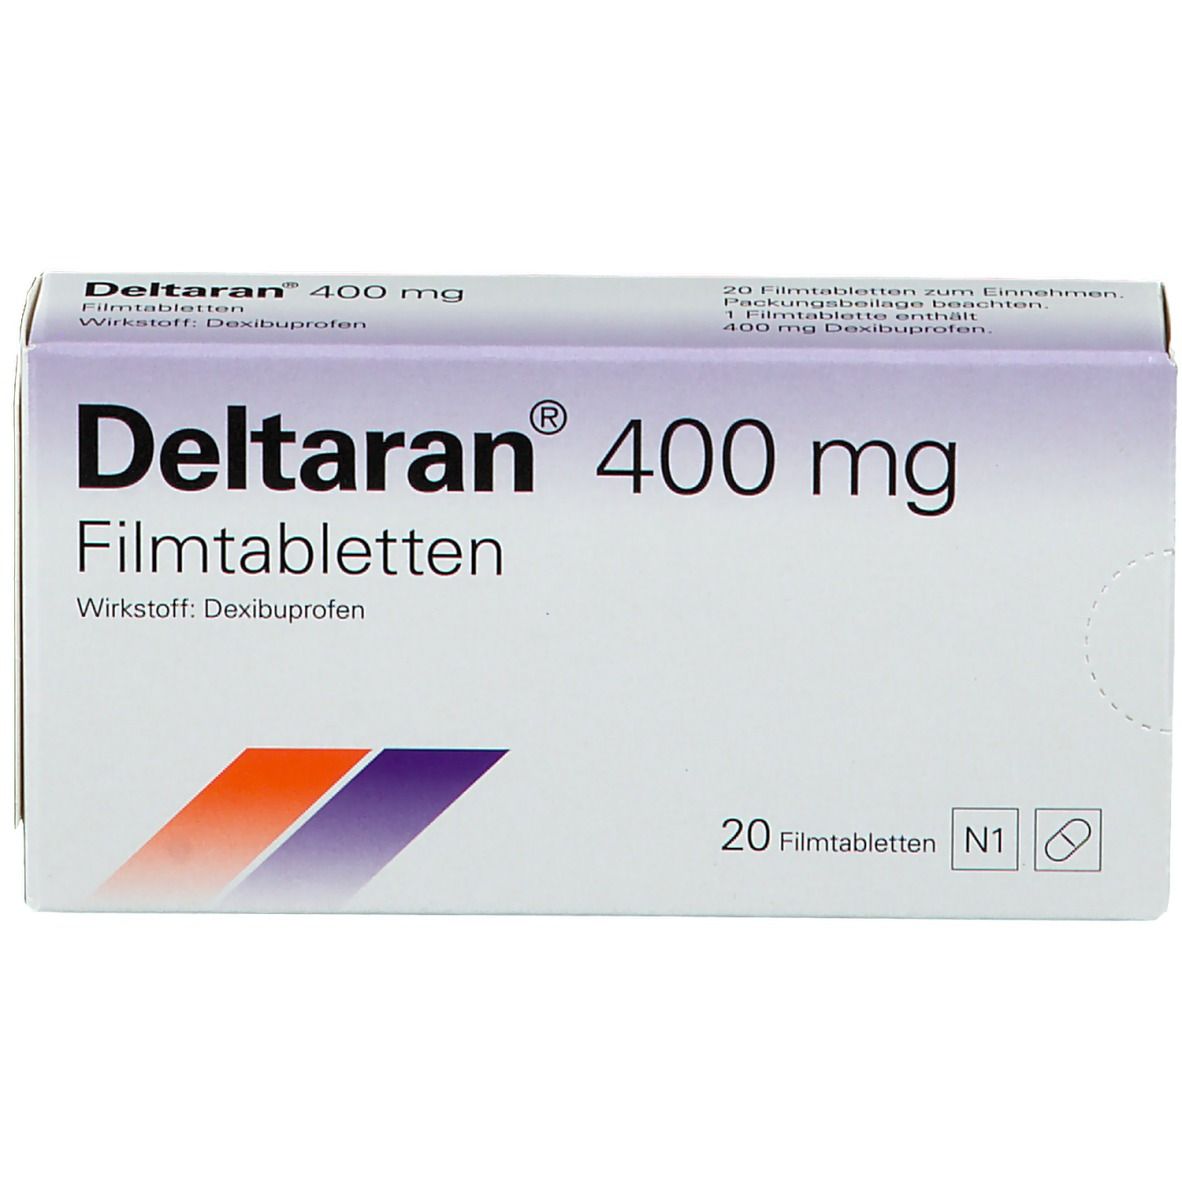 Deltaran® 400 mg